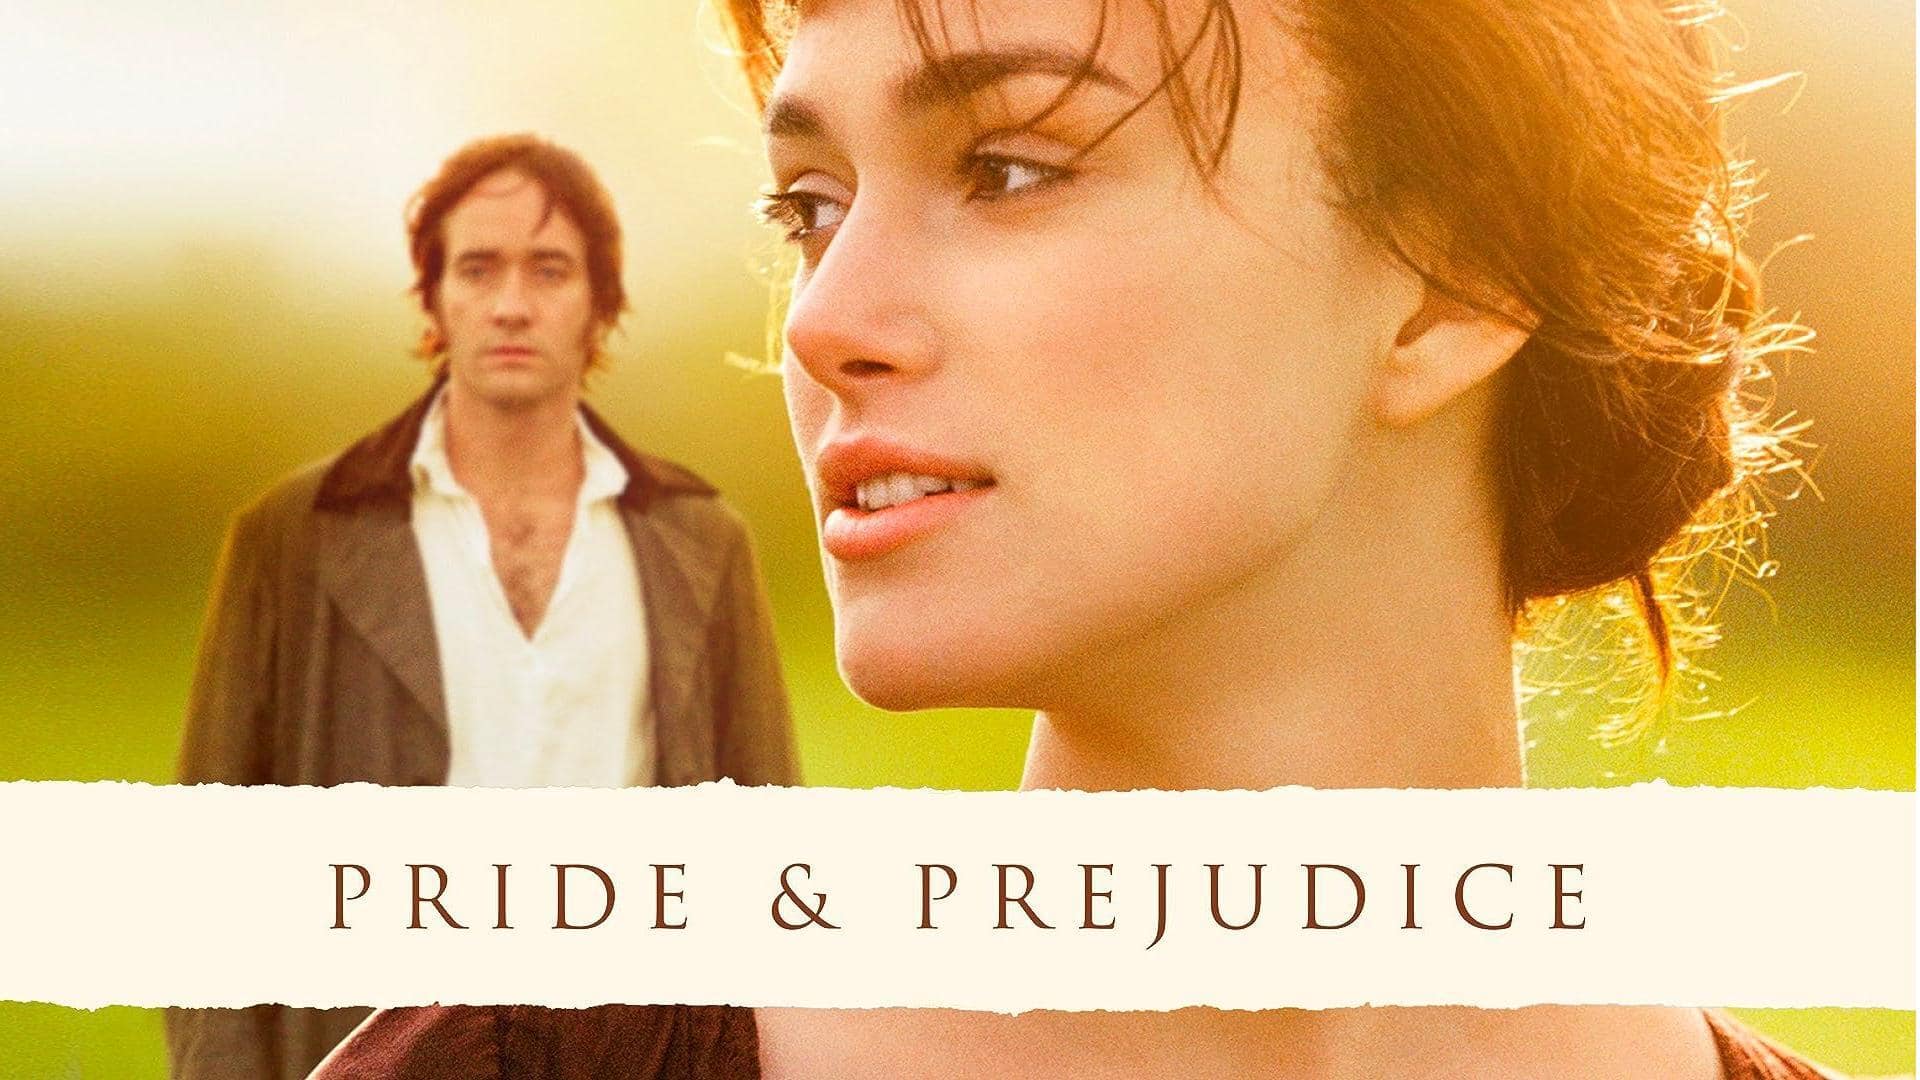 18yrs of 'Pride & Prejudice': Why 2005 adaptation's still loved